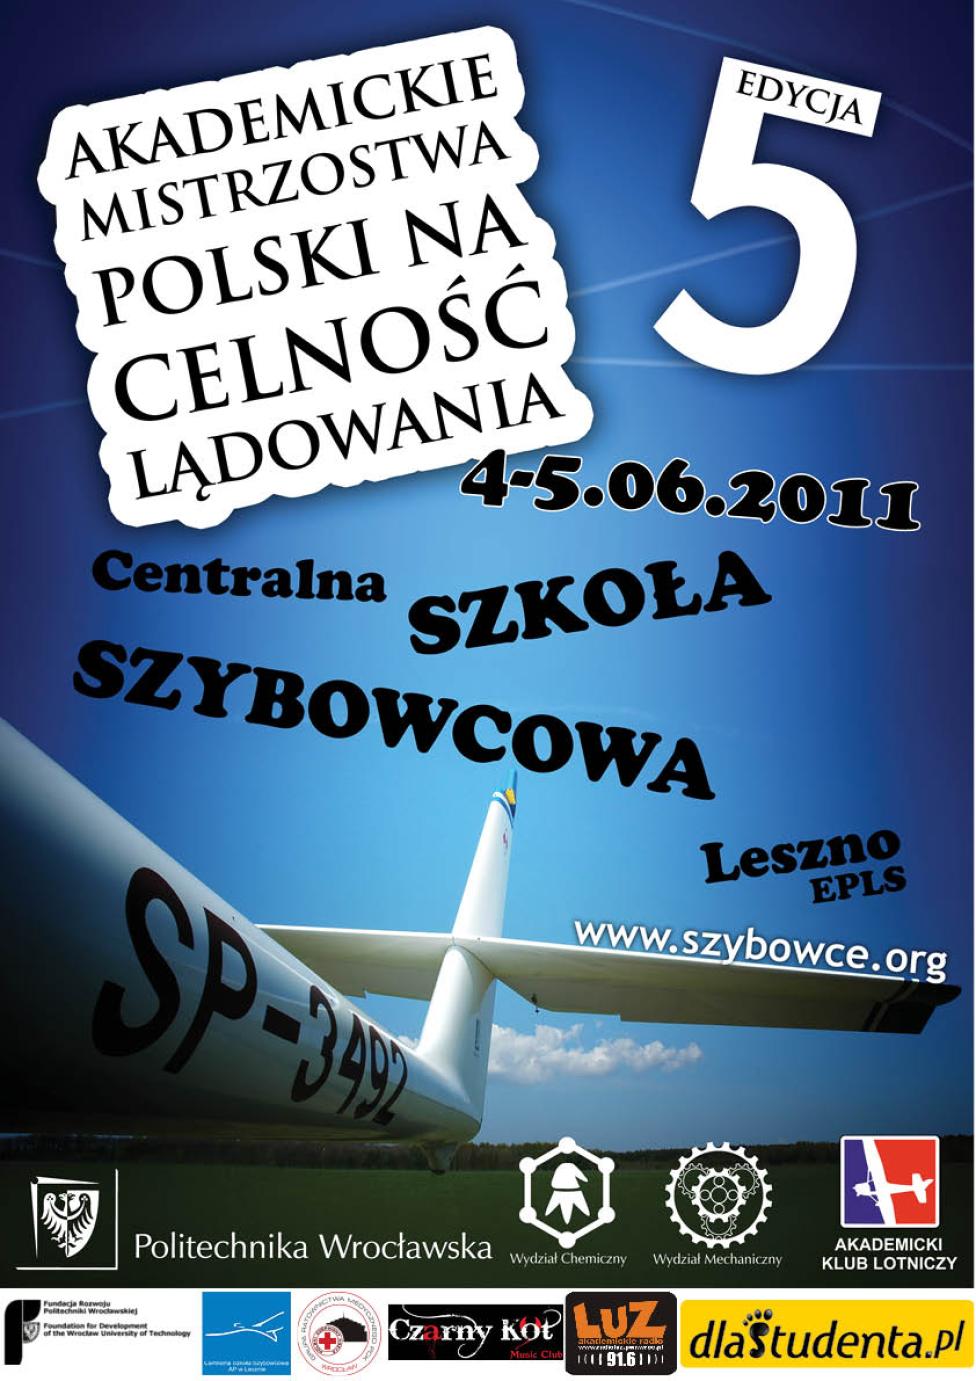 V Akademickie Mistrzostwa Polski na Celnosć Lądowania - plakat